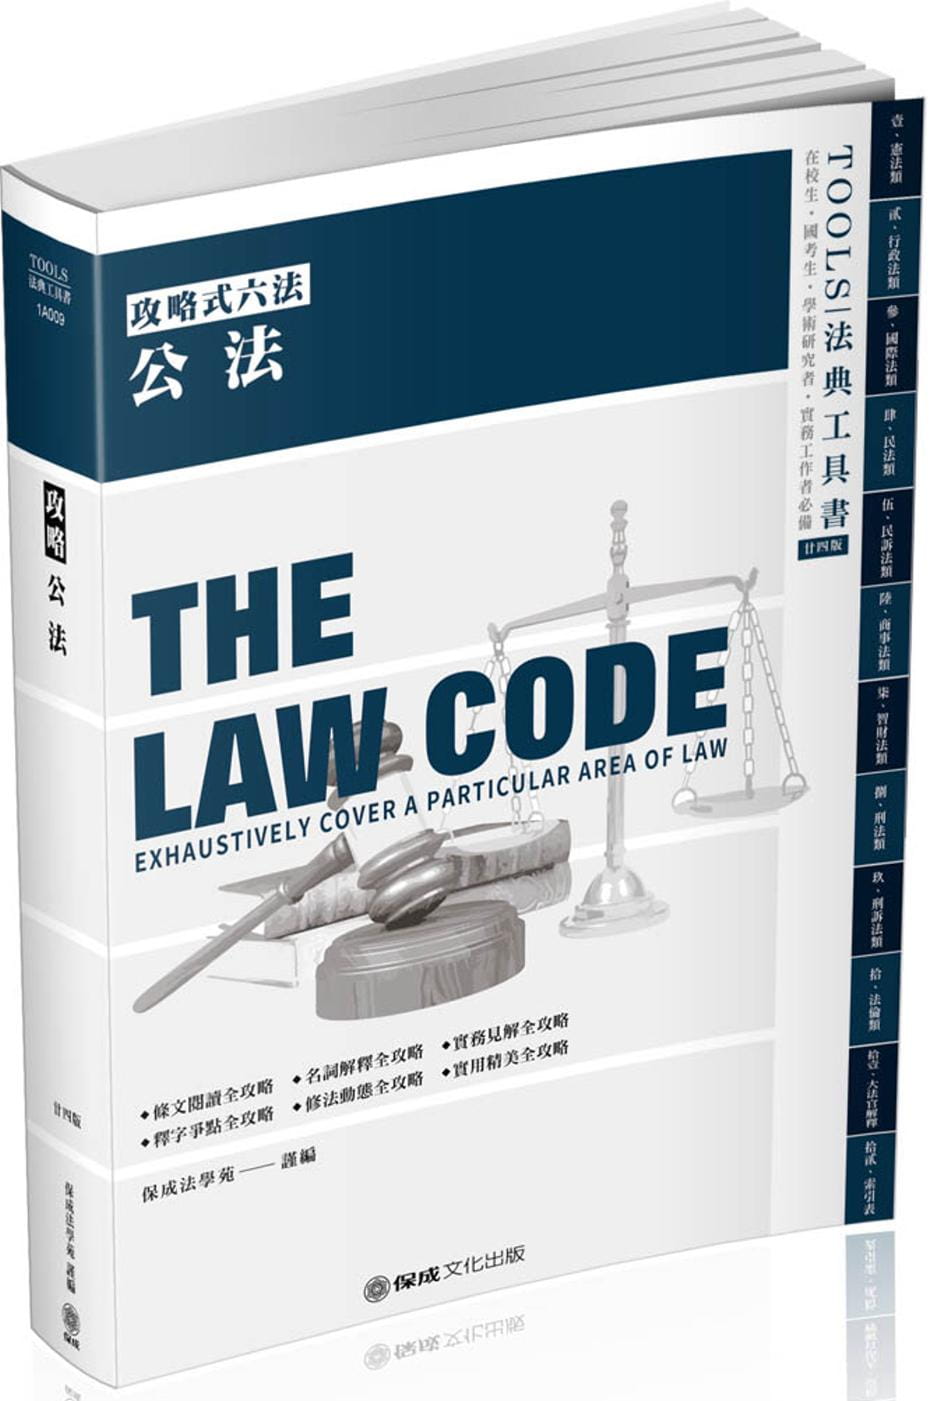 攻略公法：2020法律法典工具書(保成)(24版)